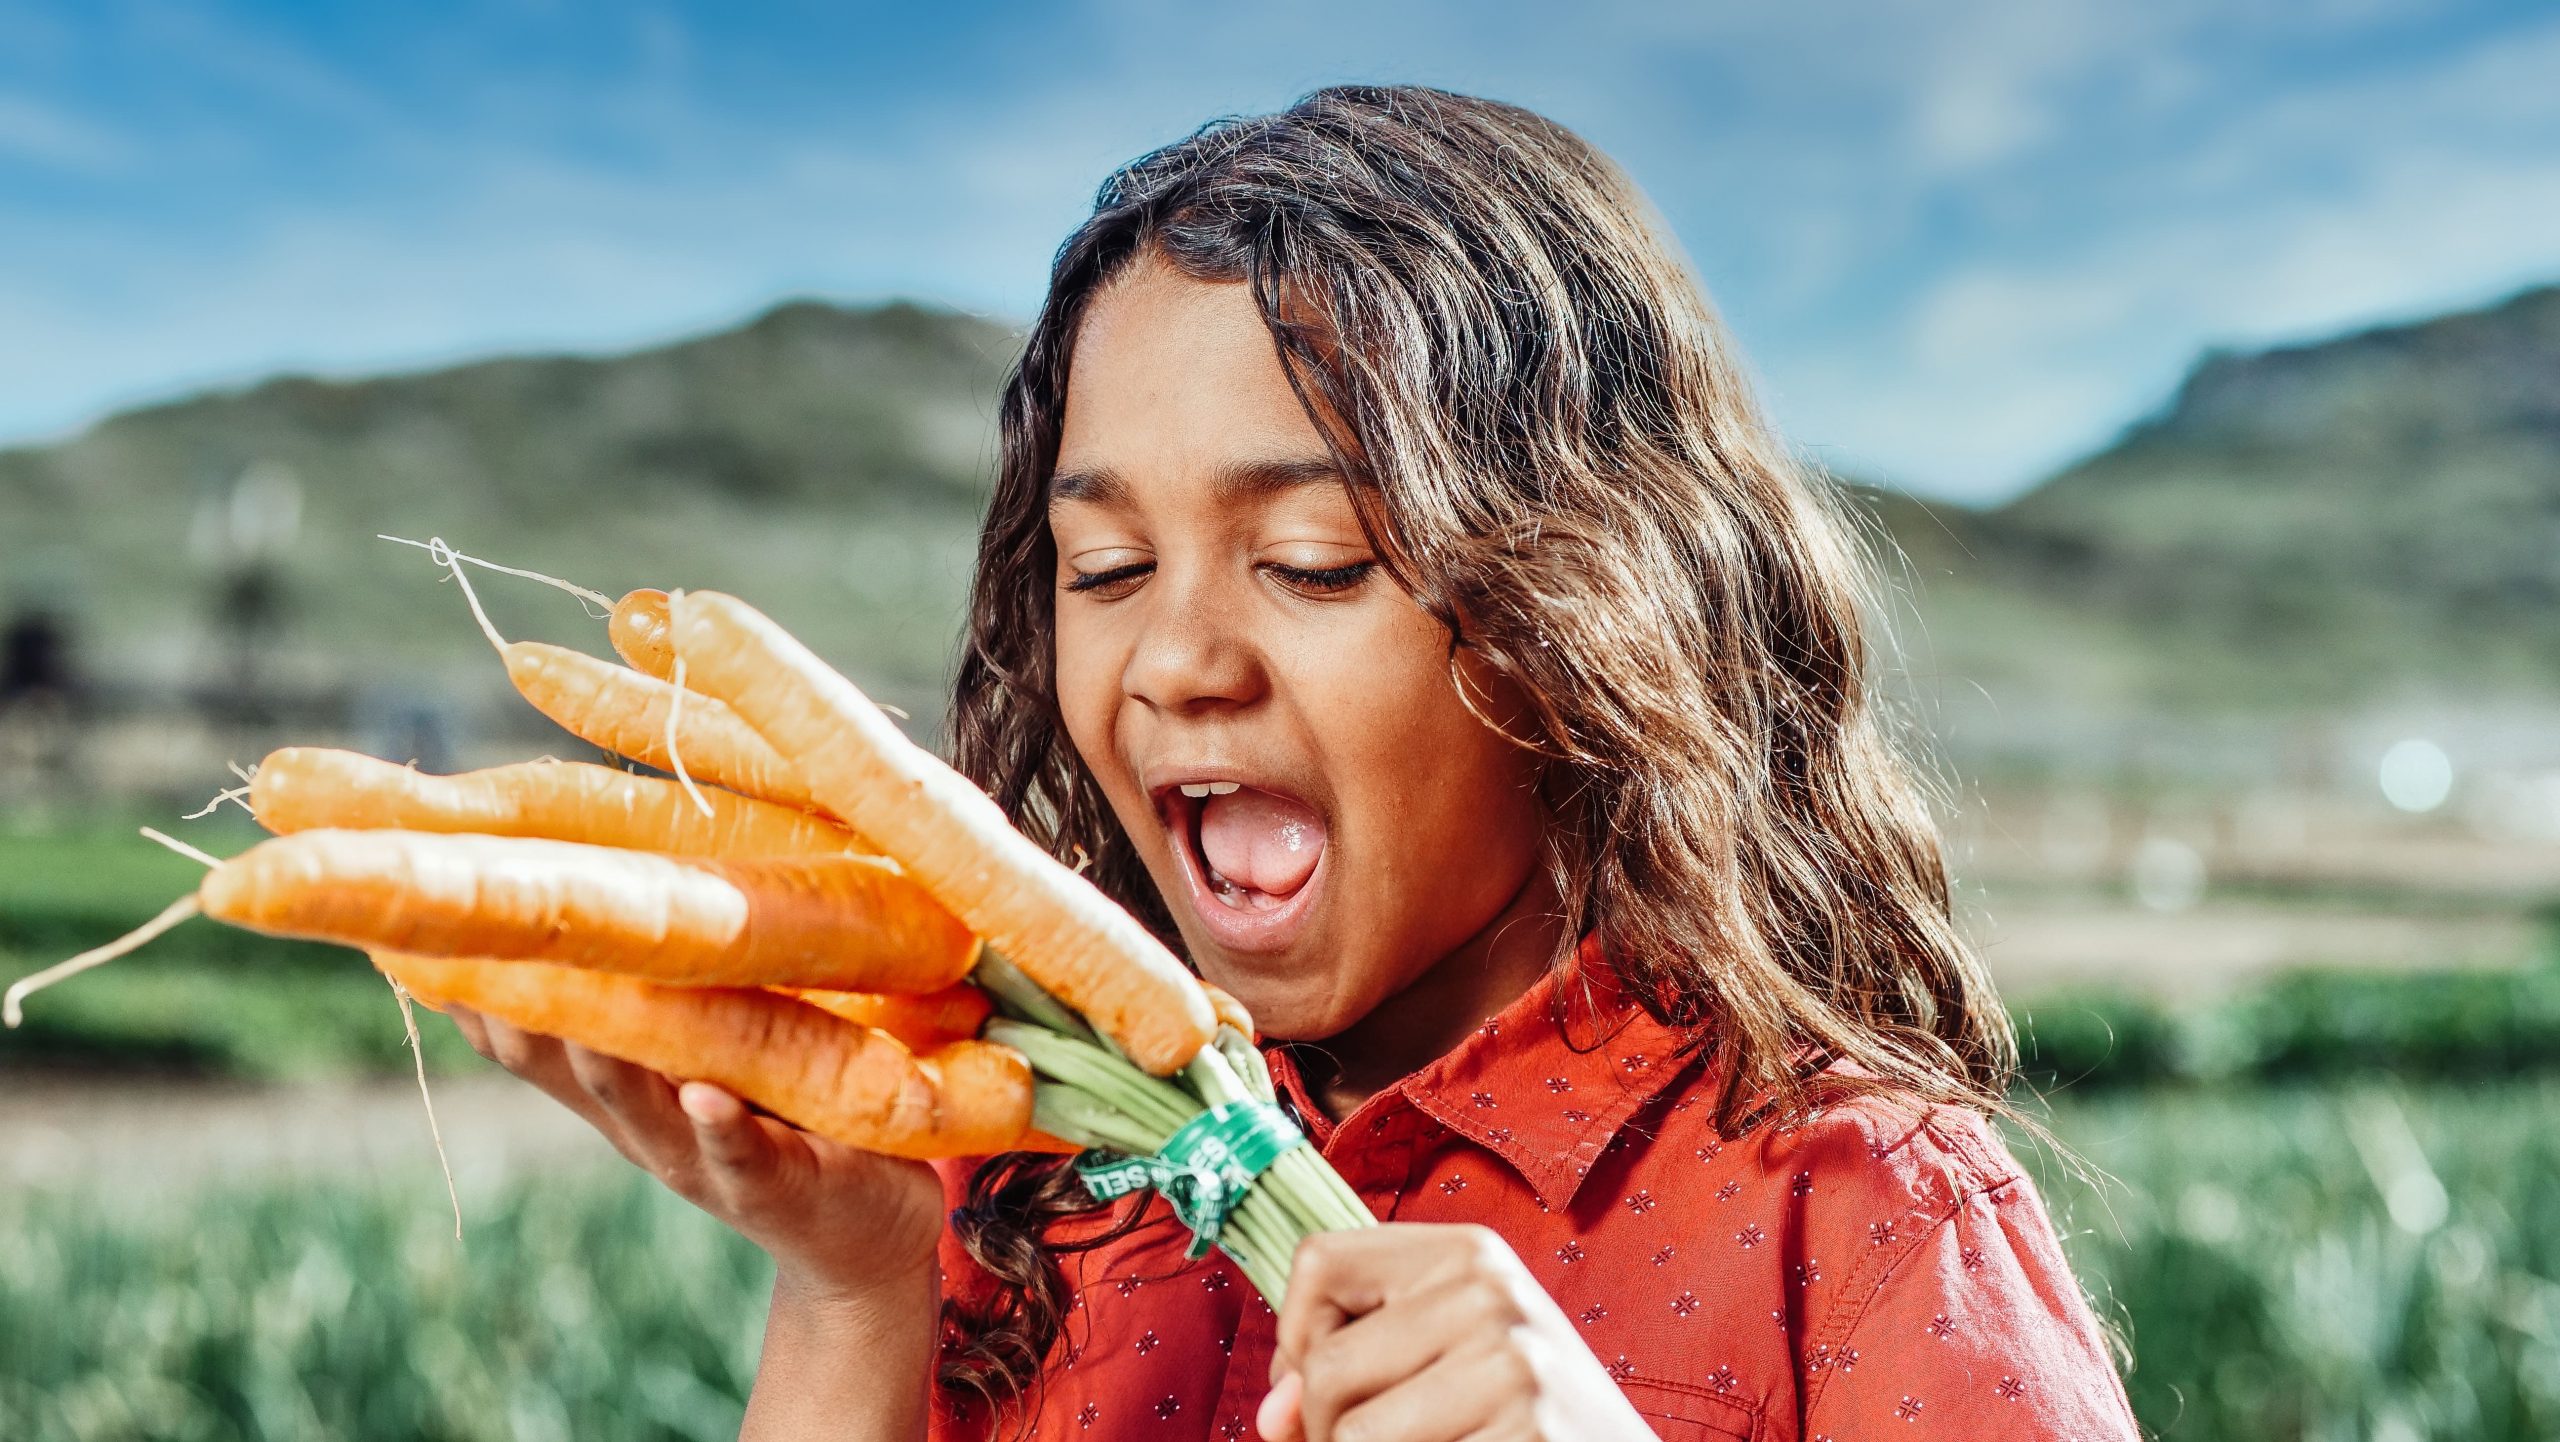 das Bild eines kleinen Mädchens, das spielerisch Karotten essen möchte, gesunde Gewohnheiten sind etwas, das therapinum vermitteln möchte